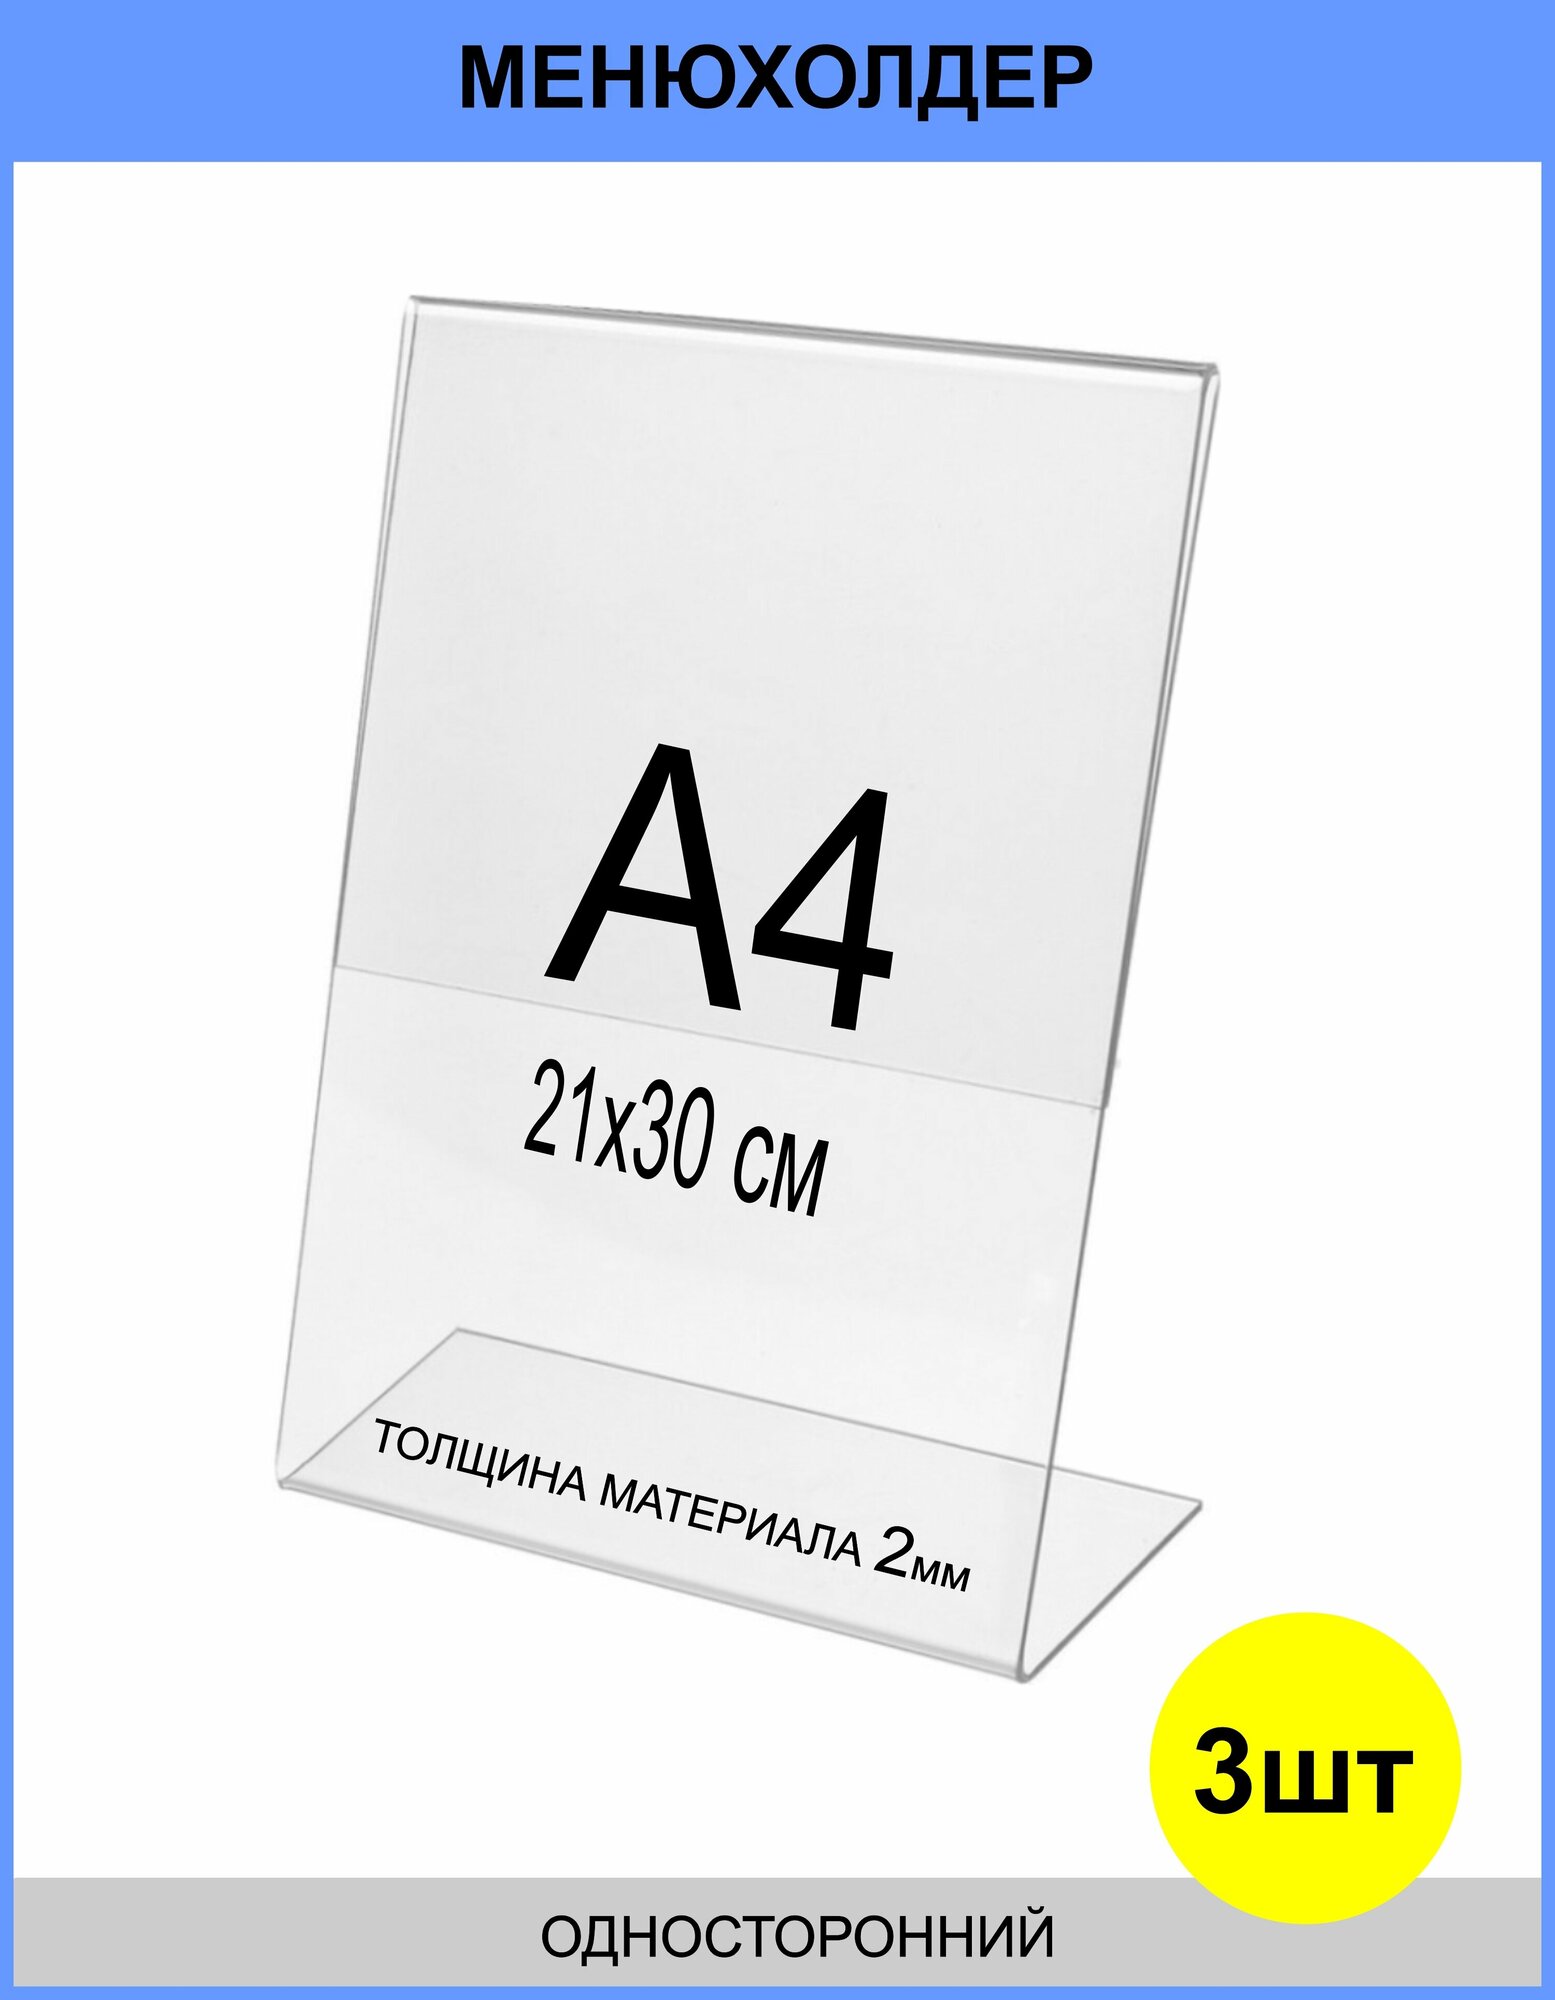 Менюхолдер А4 (тейбл тент) вертикальный односторонний (210х297 мм) 3 шт подставка настольная для рекламных материалов из прозрачного акрила 2 мм